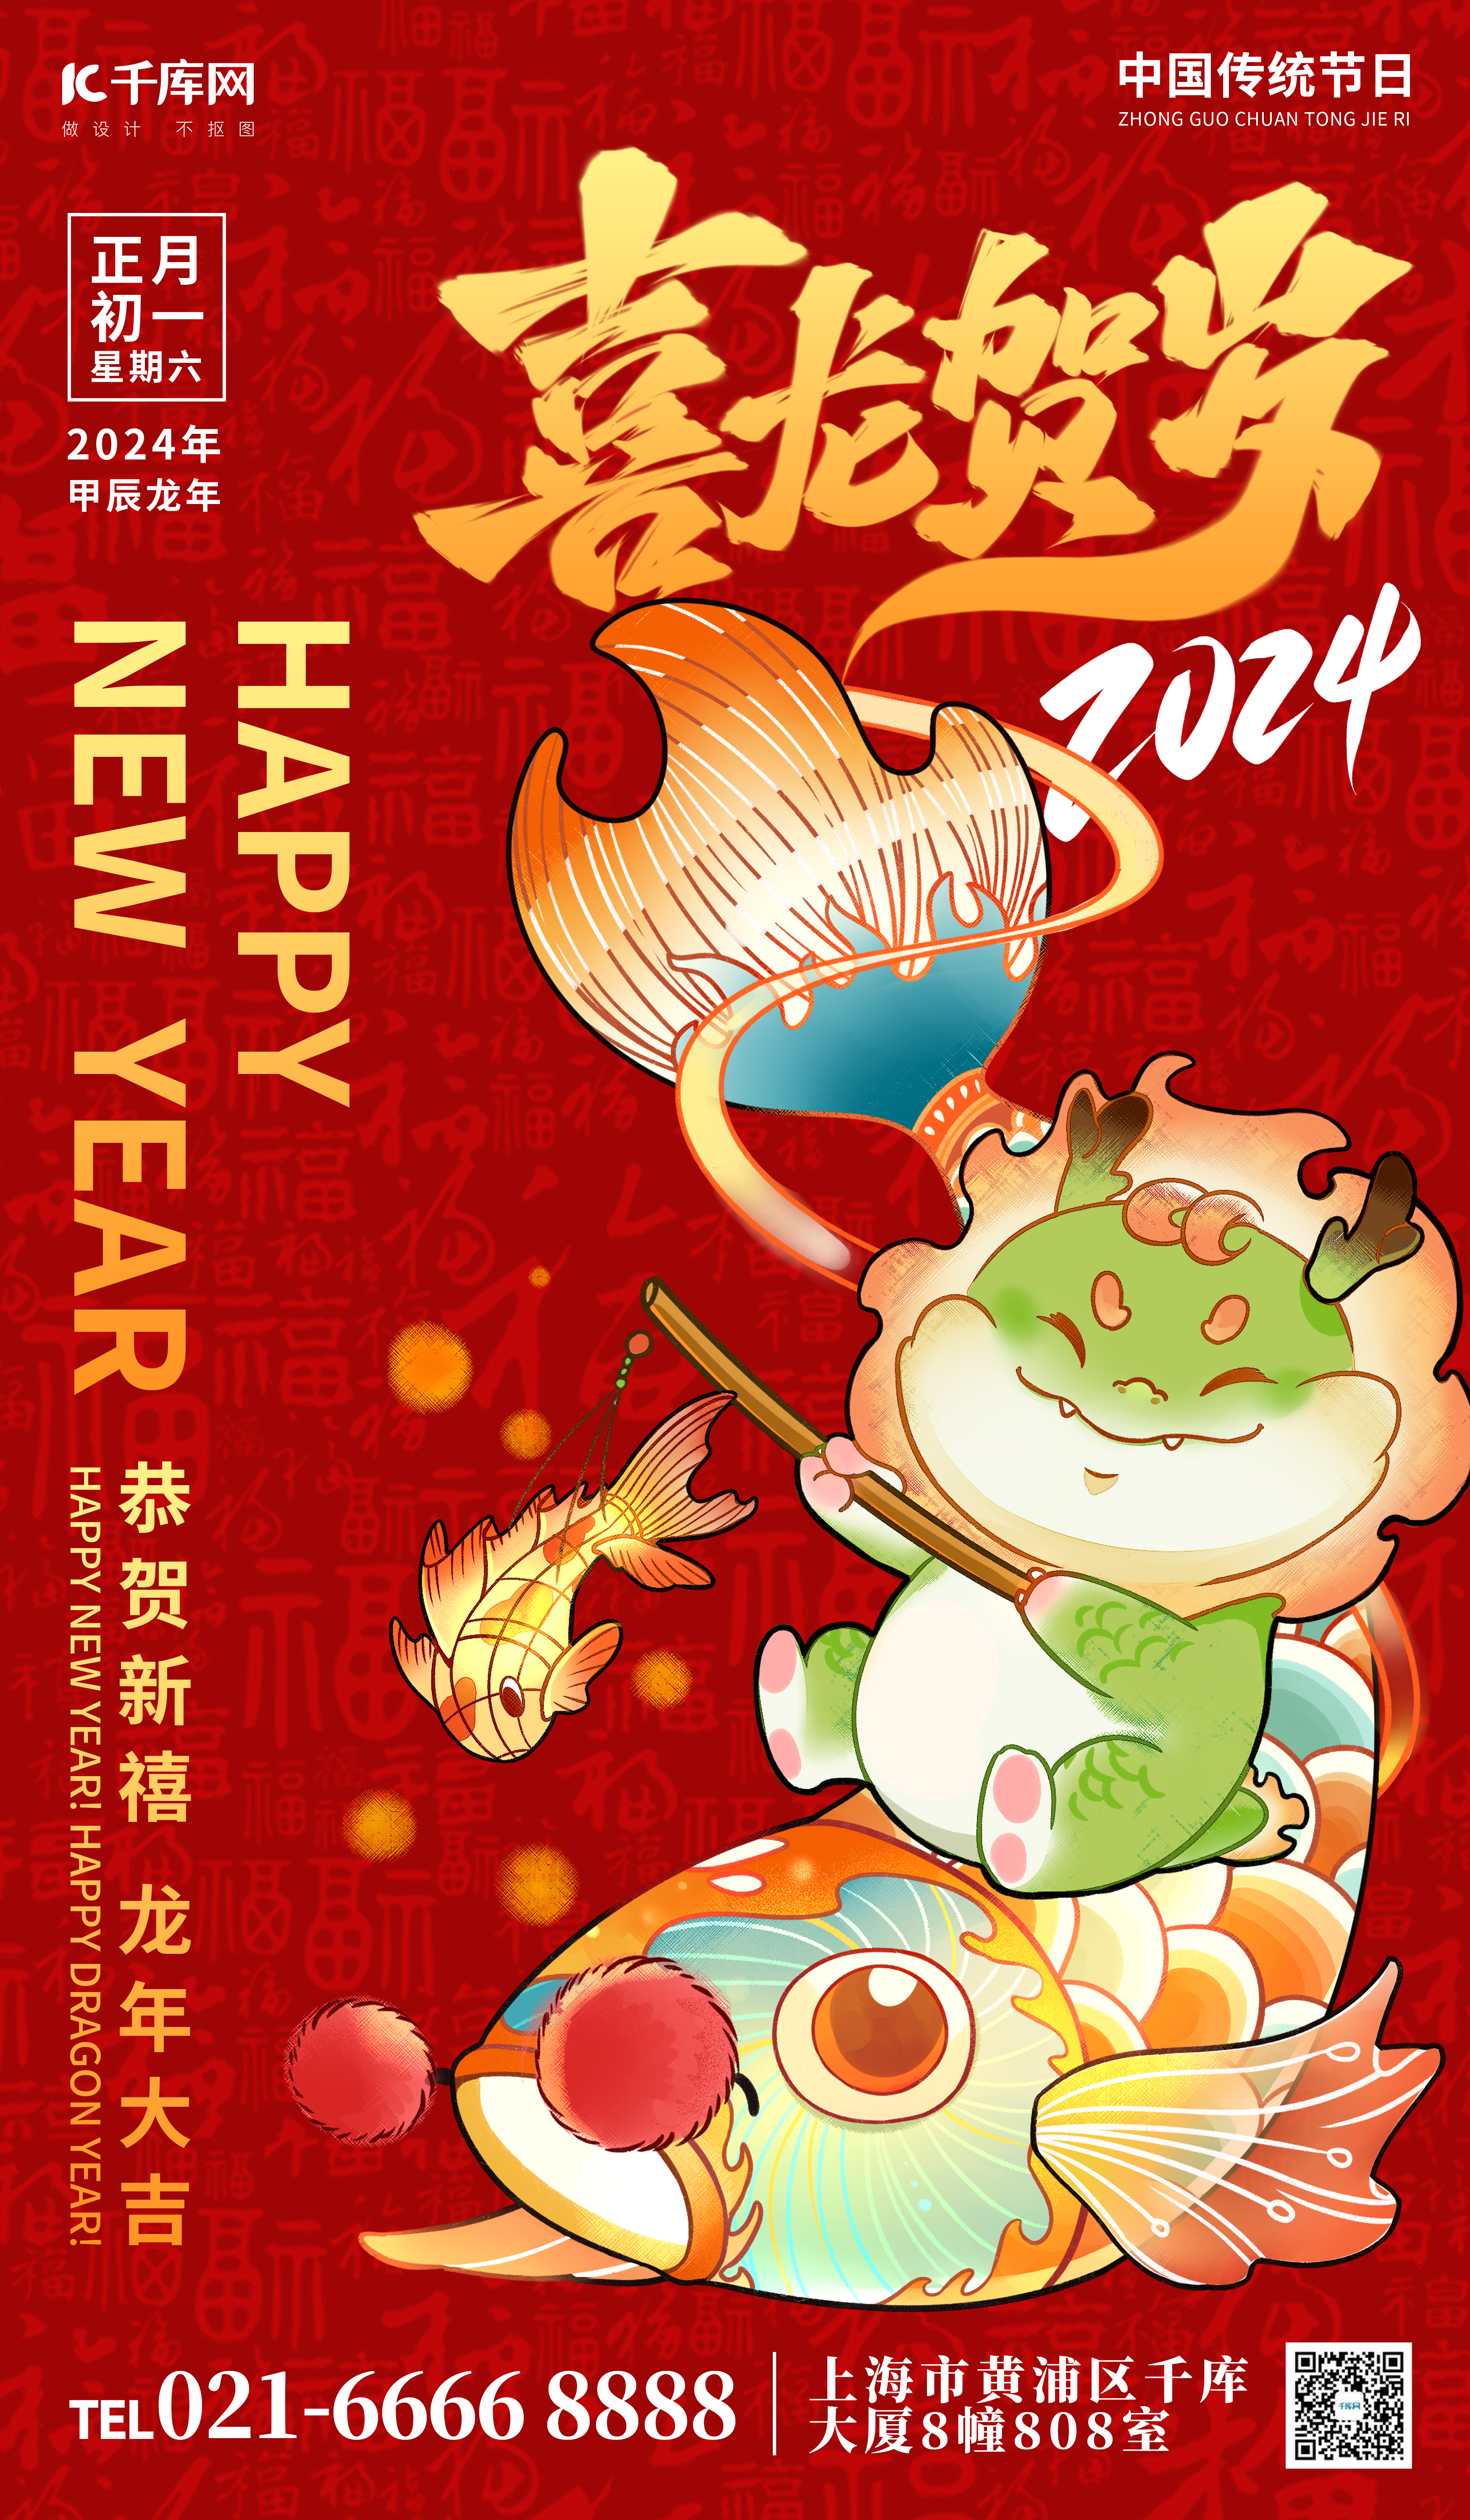 喜龙贺岁中国龙锦鲤红色创意手绘广告宣传海报图片